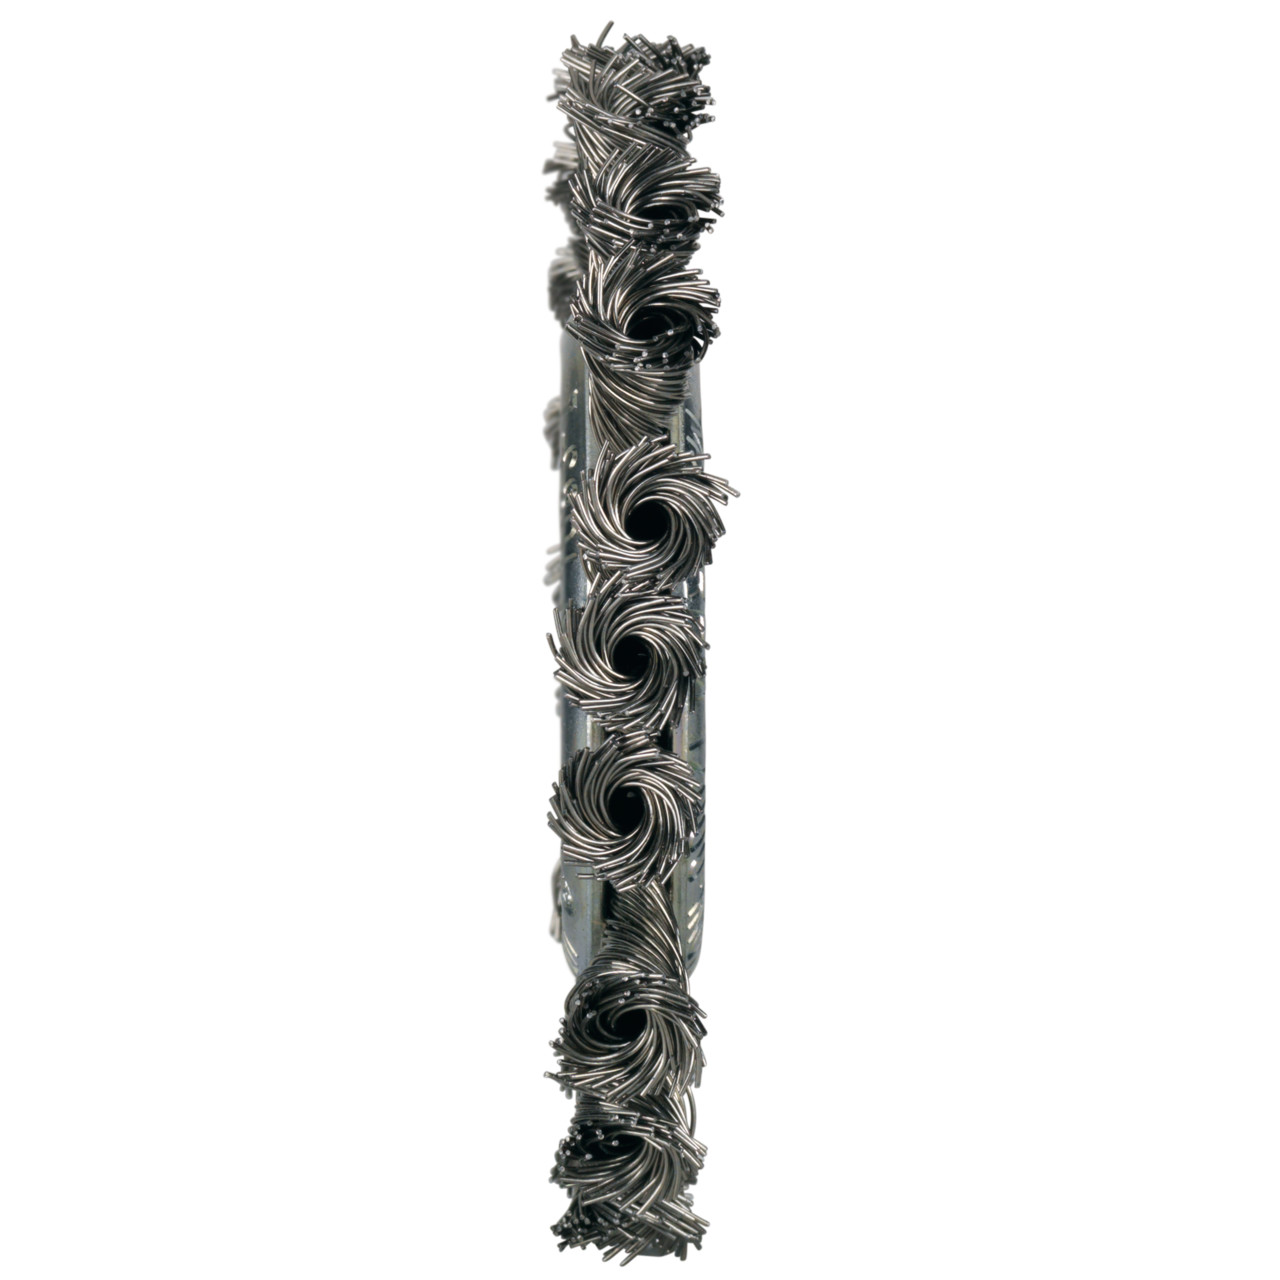 Tyrolit Cepillos redondos DxAxLxGE 178x15x44xM14 Para acero inoxidable, forma: 1RDZ - (cepillo redondo), Art. 16425